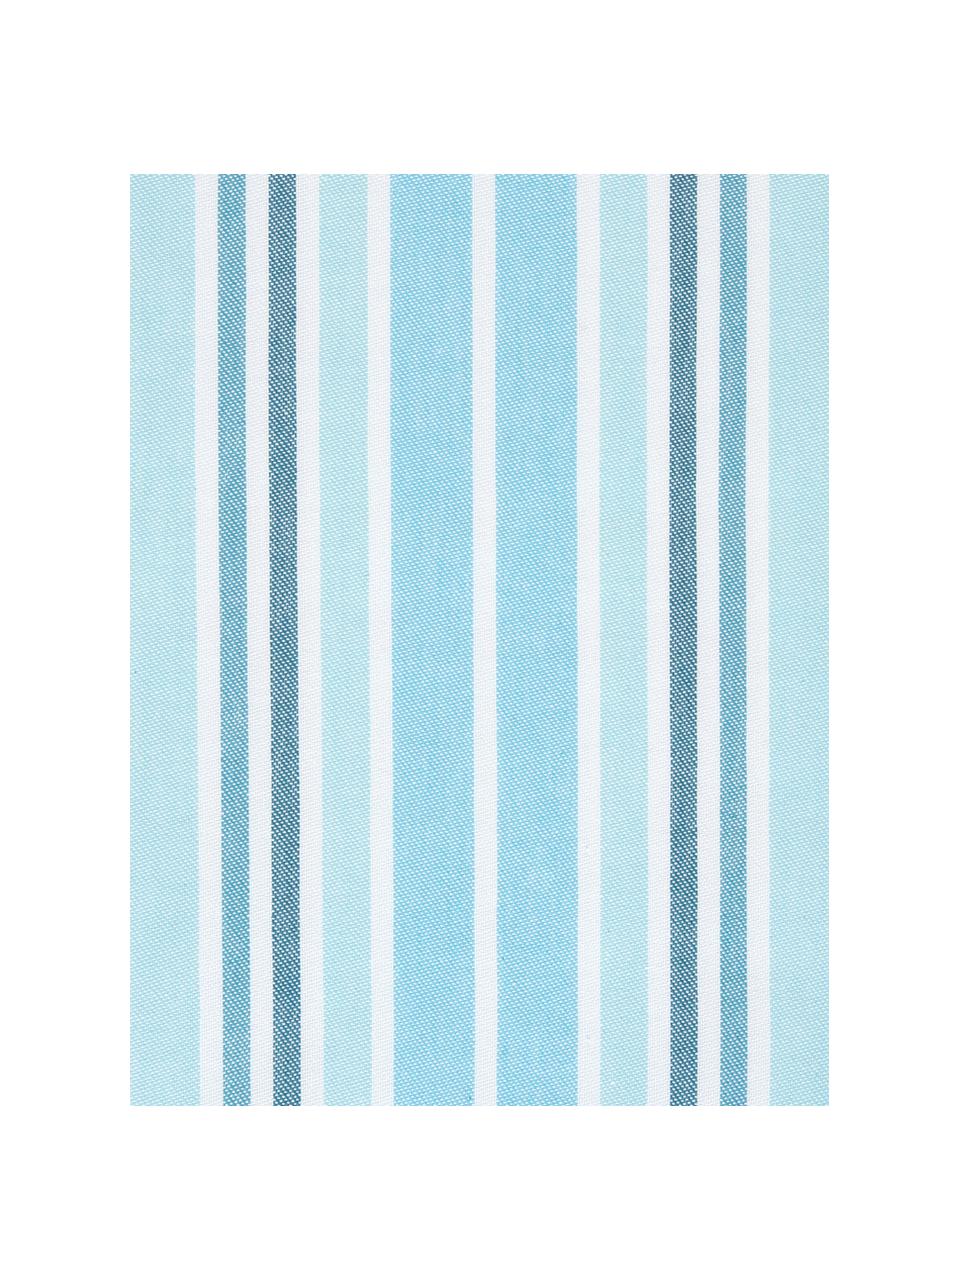 Poszewka na poduszkę Lin, 100% bawełna, Kremowobiały, niebieski, S 30 x D 50 cm